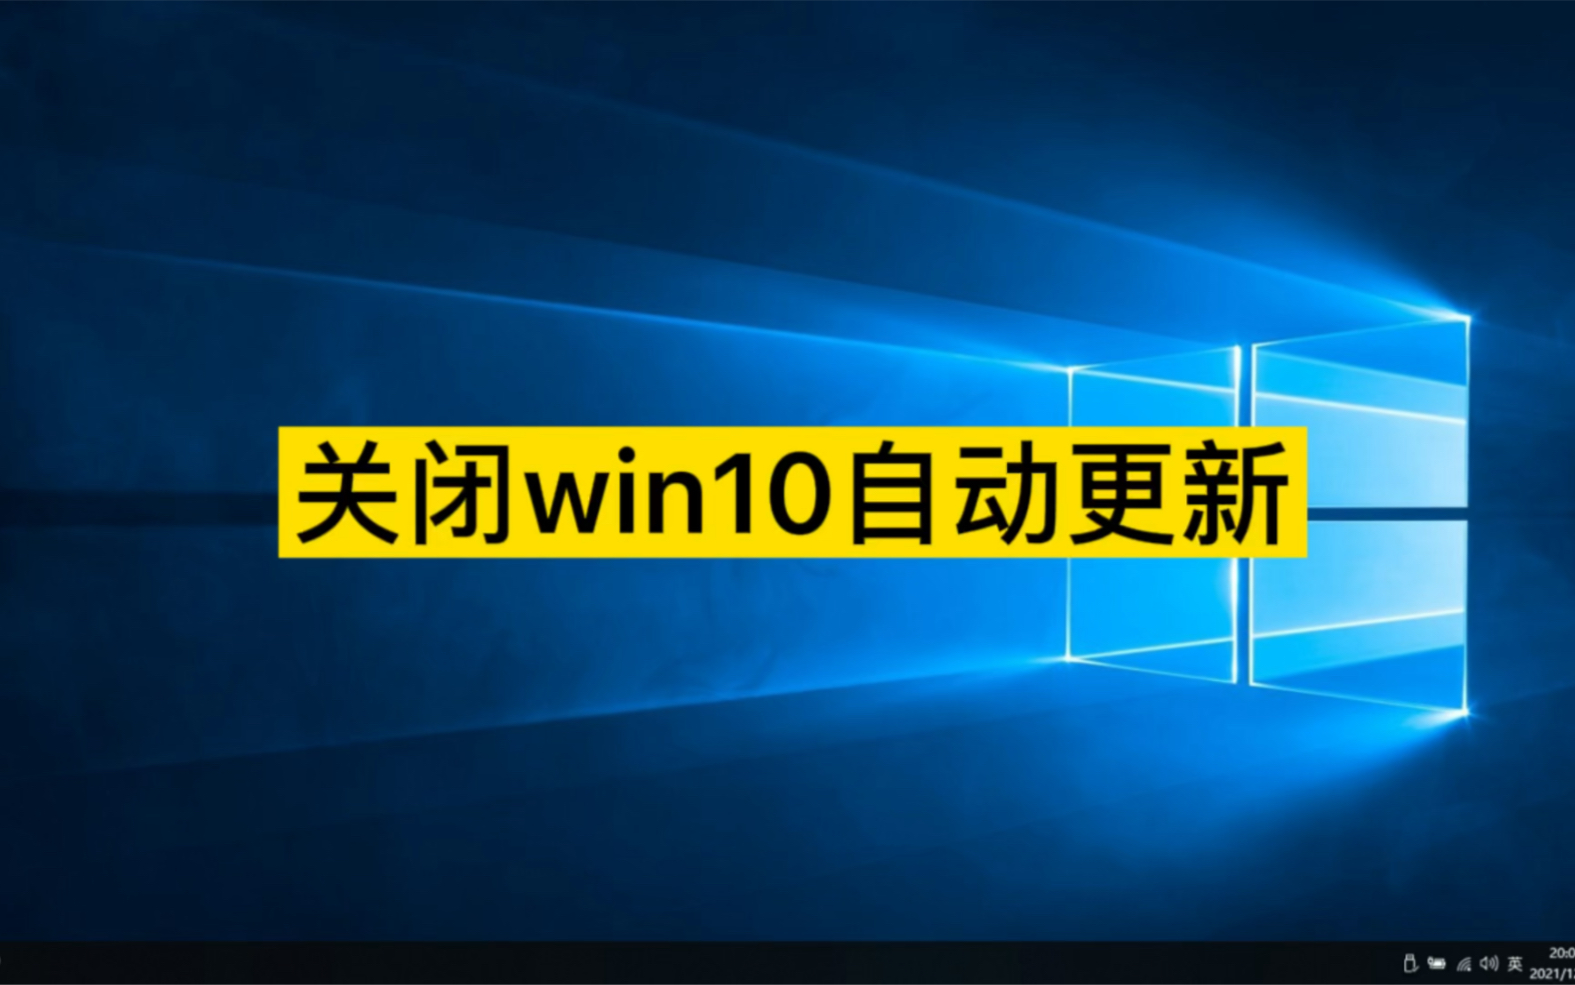 win10 正在下载更新-Win10更新重要性与问题解决策略：系统管理员的指南